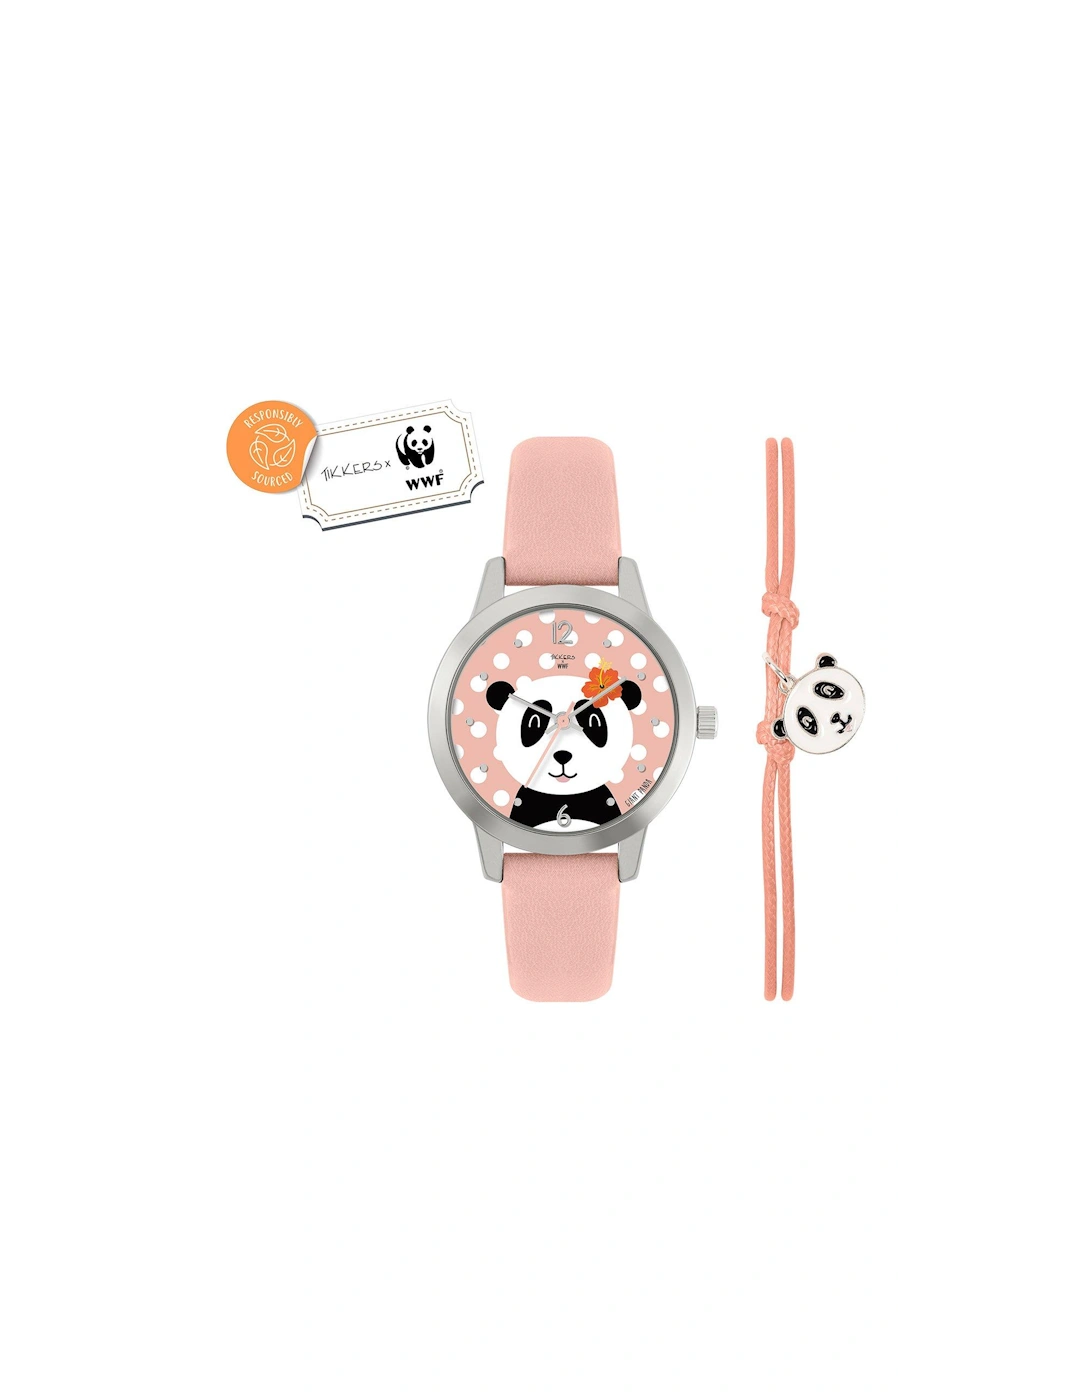 x WWF - Panda Dial Watch & Panda Charm Bracelet, 3 of 2